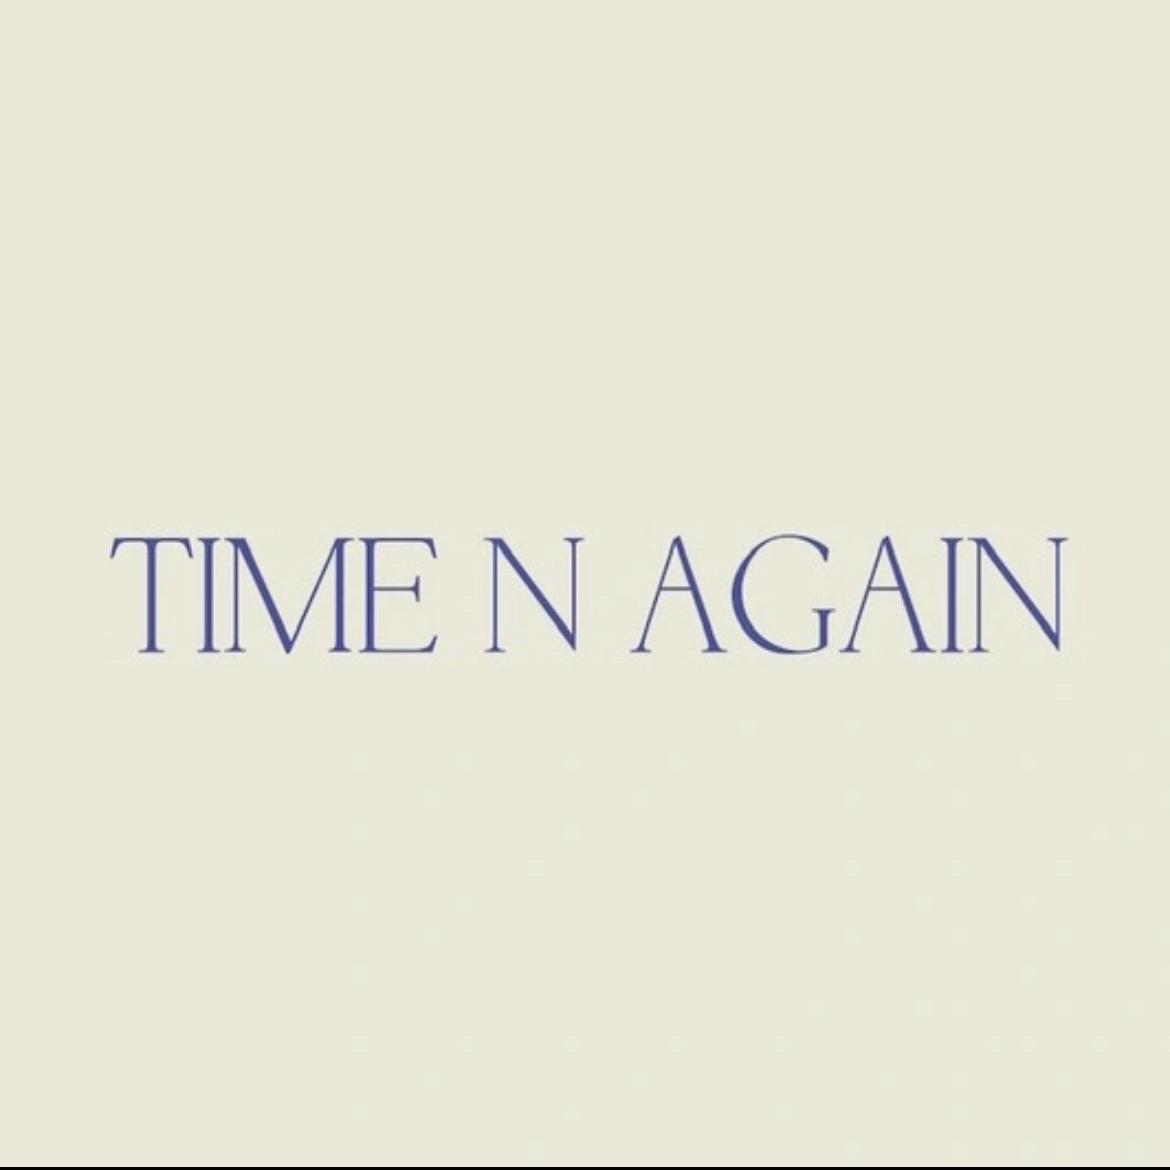 Time n again 